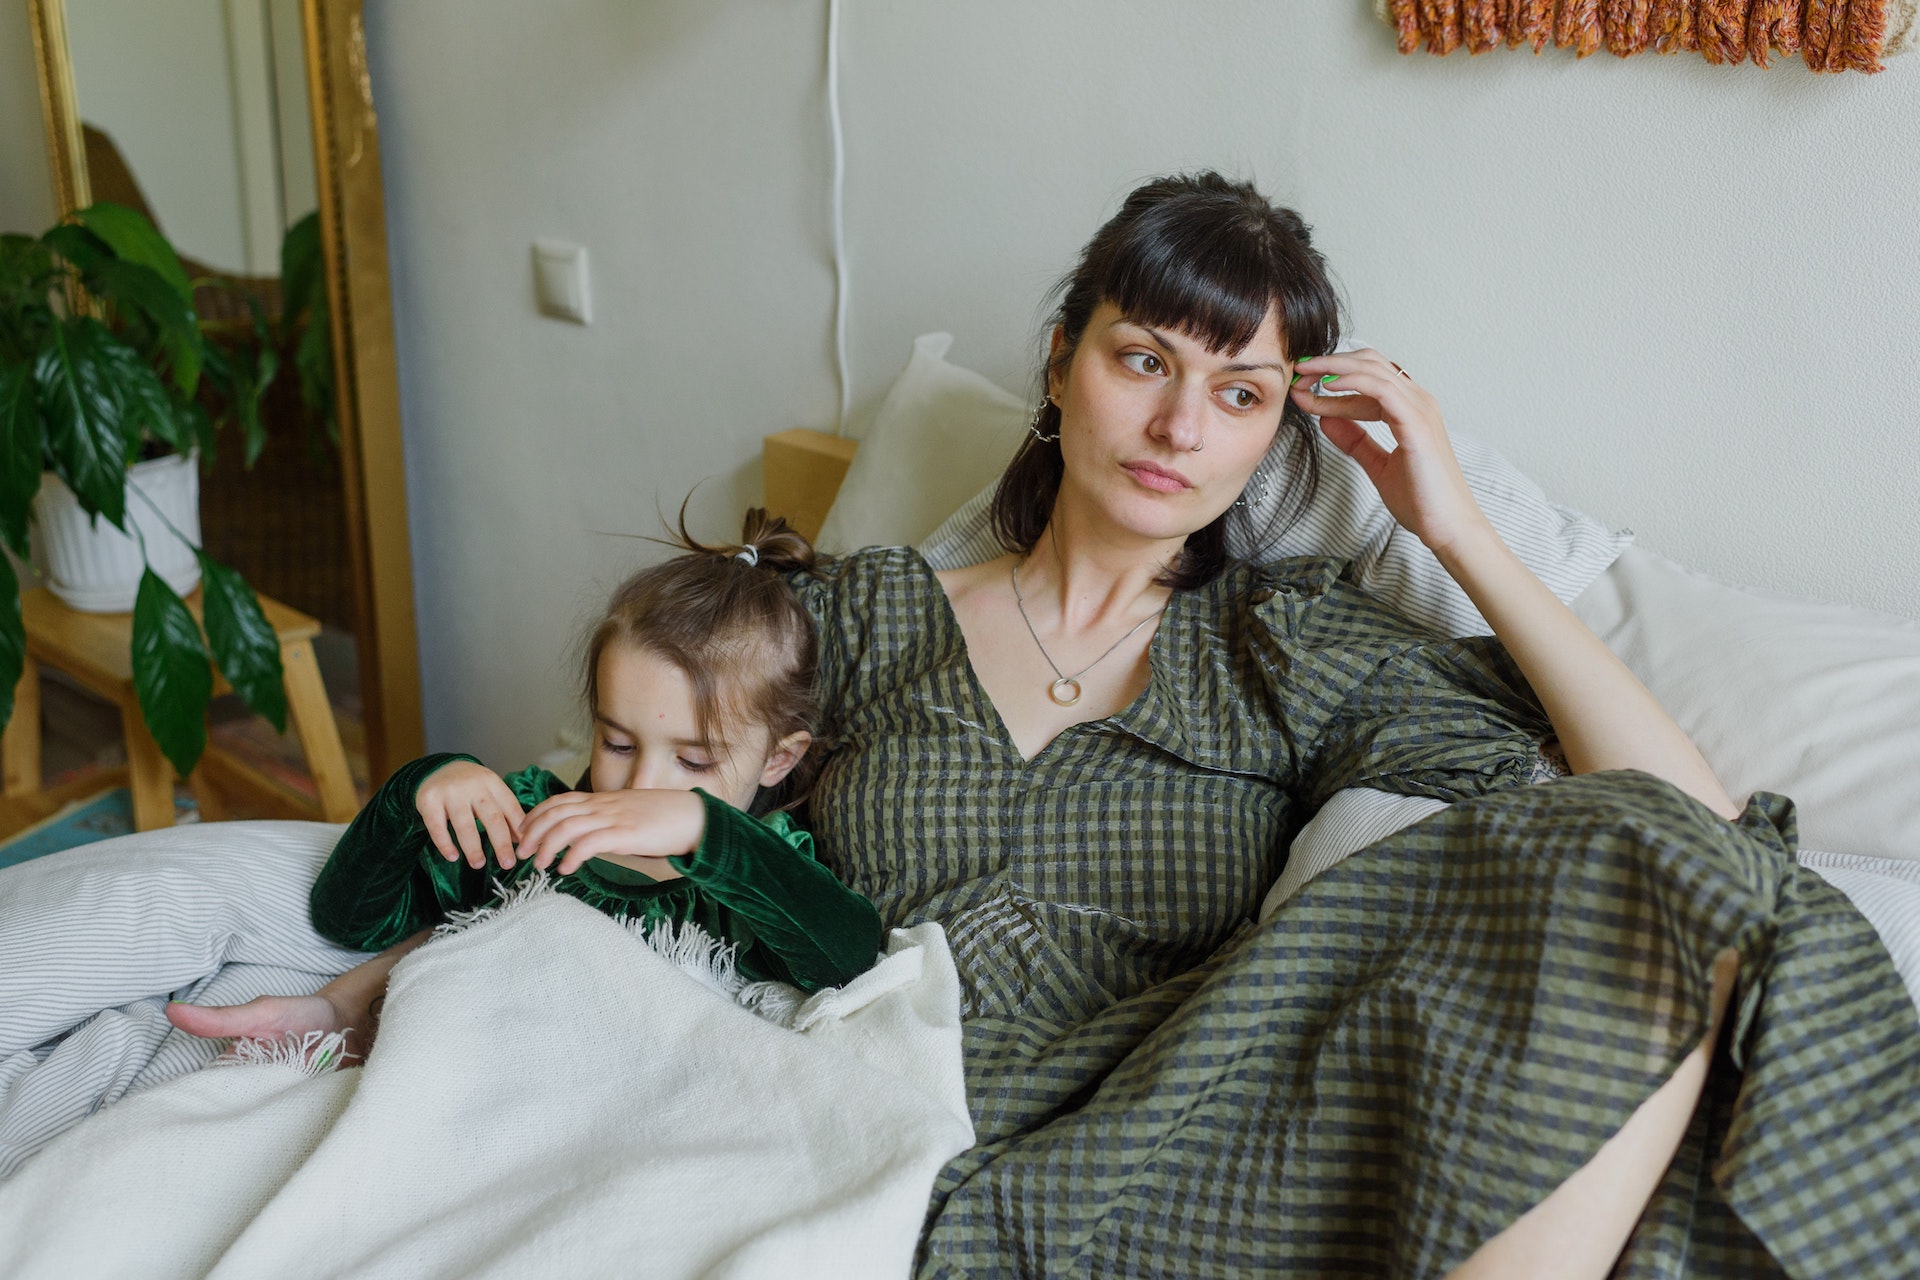 Eine Mutter sitzt mit ihrem Kind auf einem Bett und guckt traurig zur Seite. Bild: Pexels